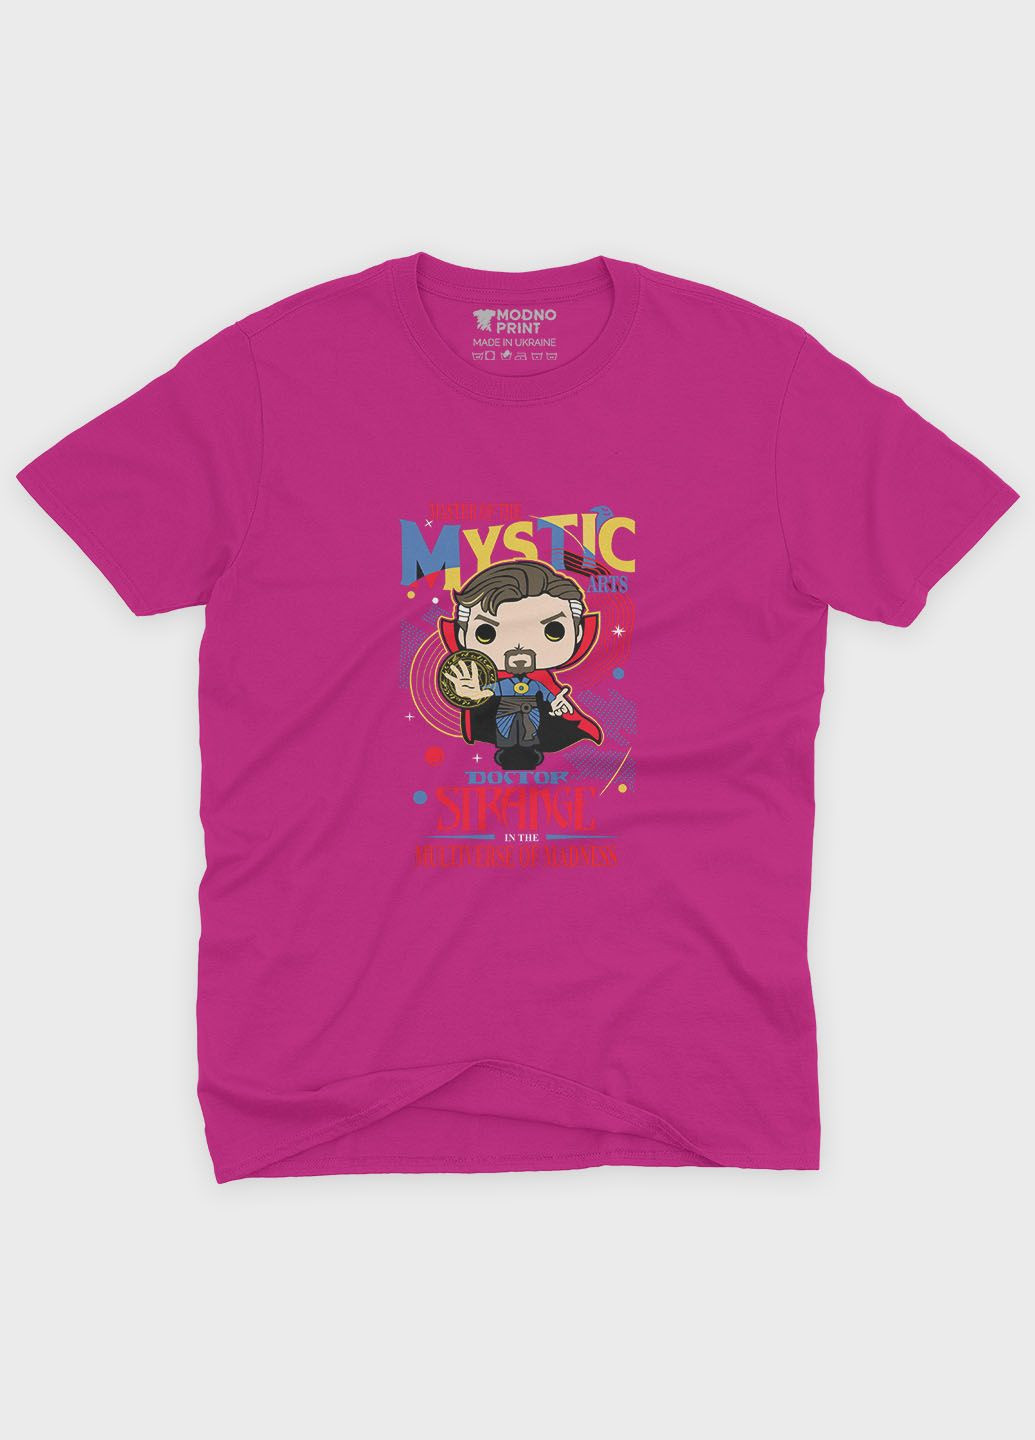 Рожева демісезонна футболка для хлопчика з принтом супергероя - доктор стрендж (ts001-1-fuxj-006-020-006-b) Modno